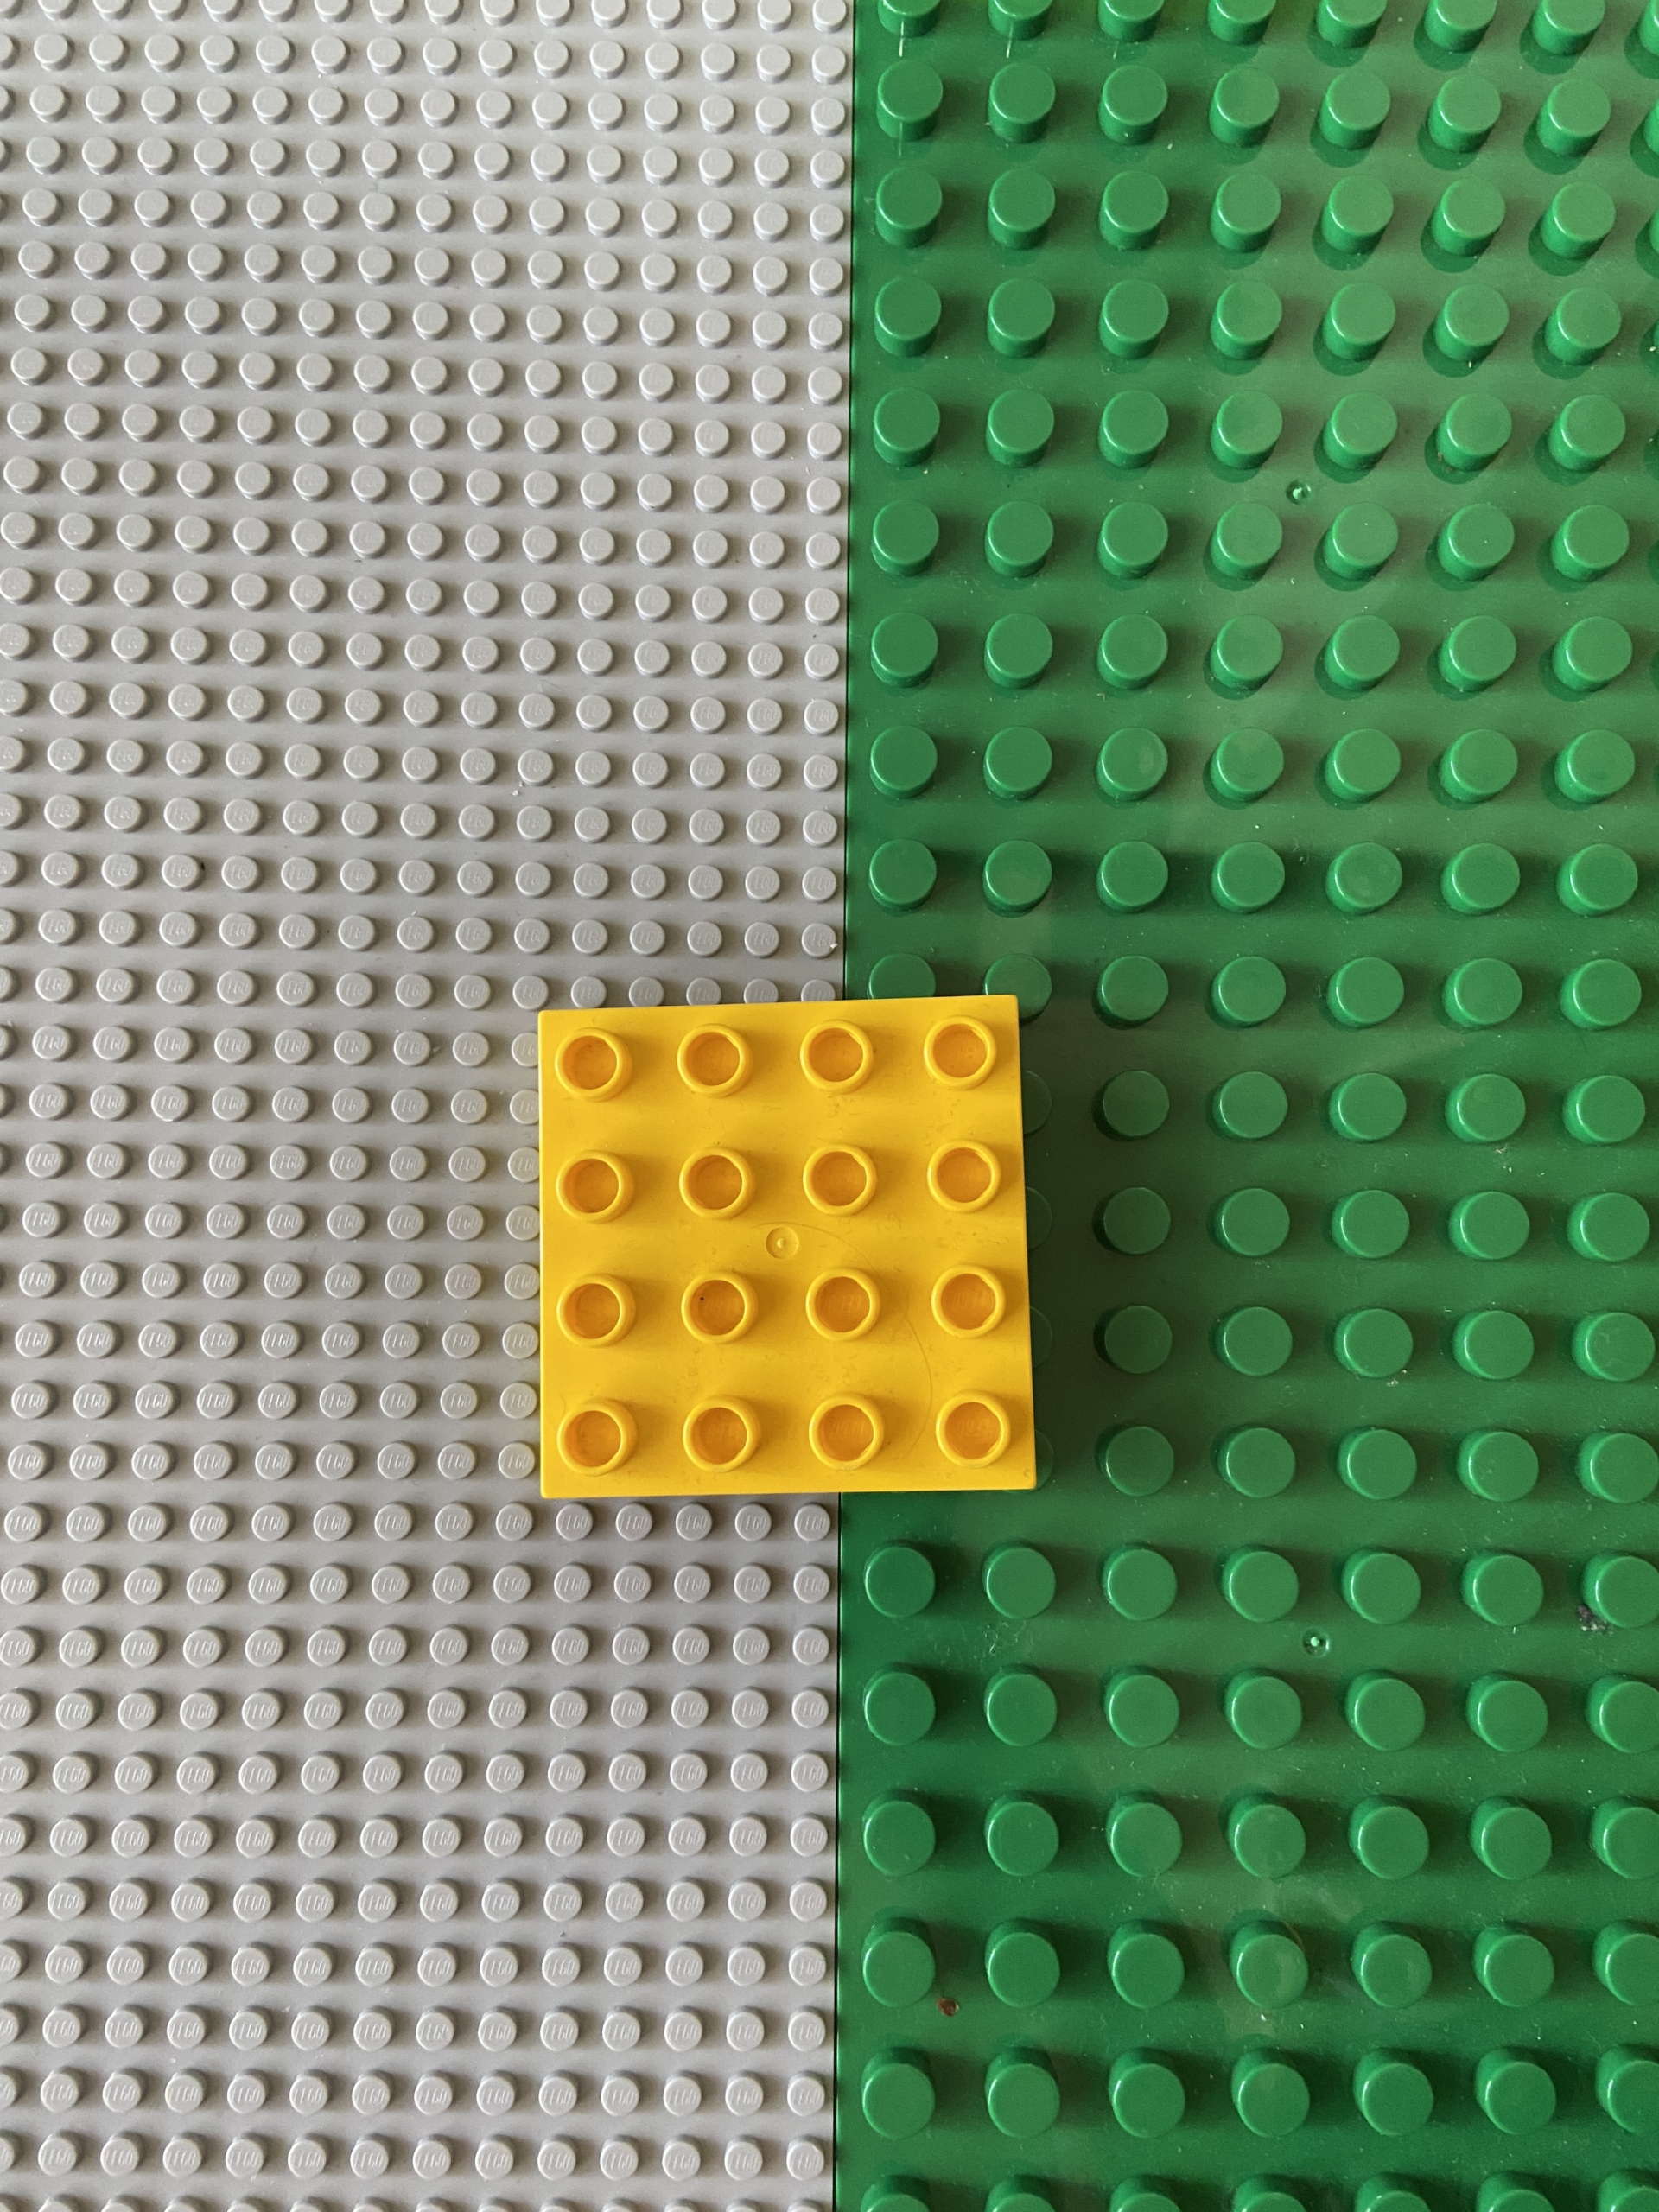 レゴと互換性はあるのか、レゴデュプロ基礎板を購入すべき3つの理由 